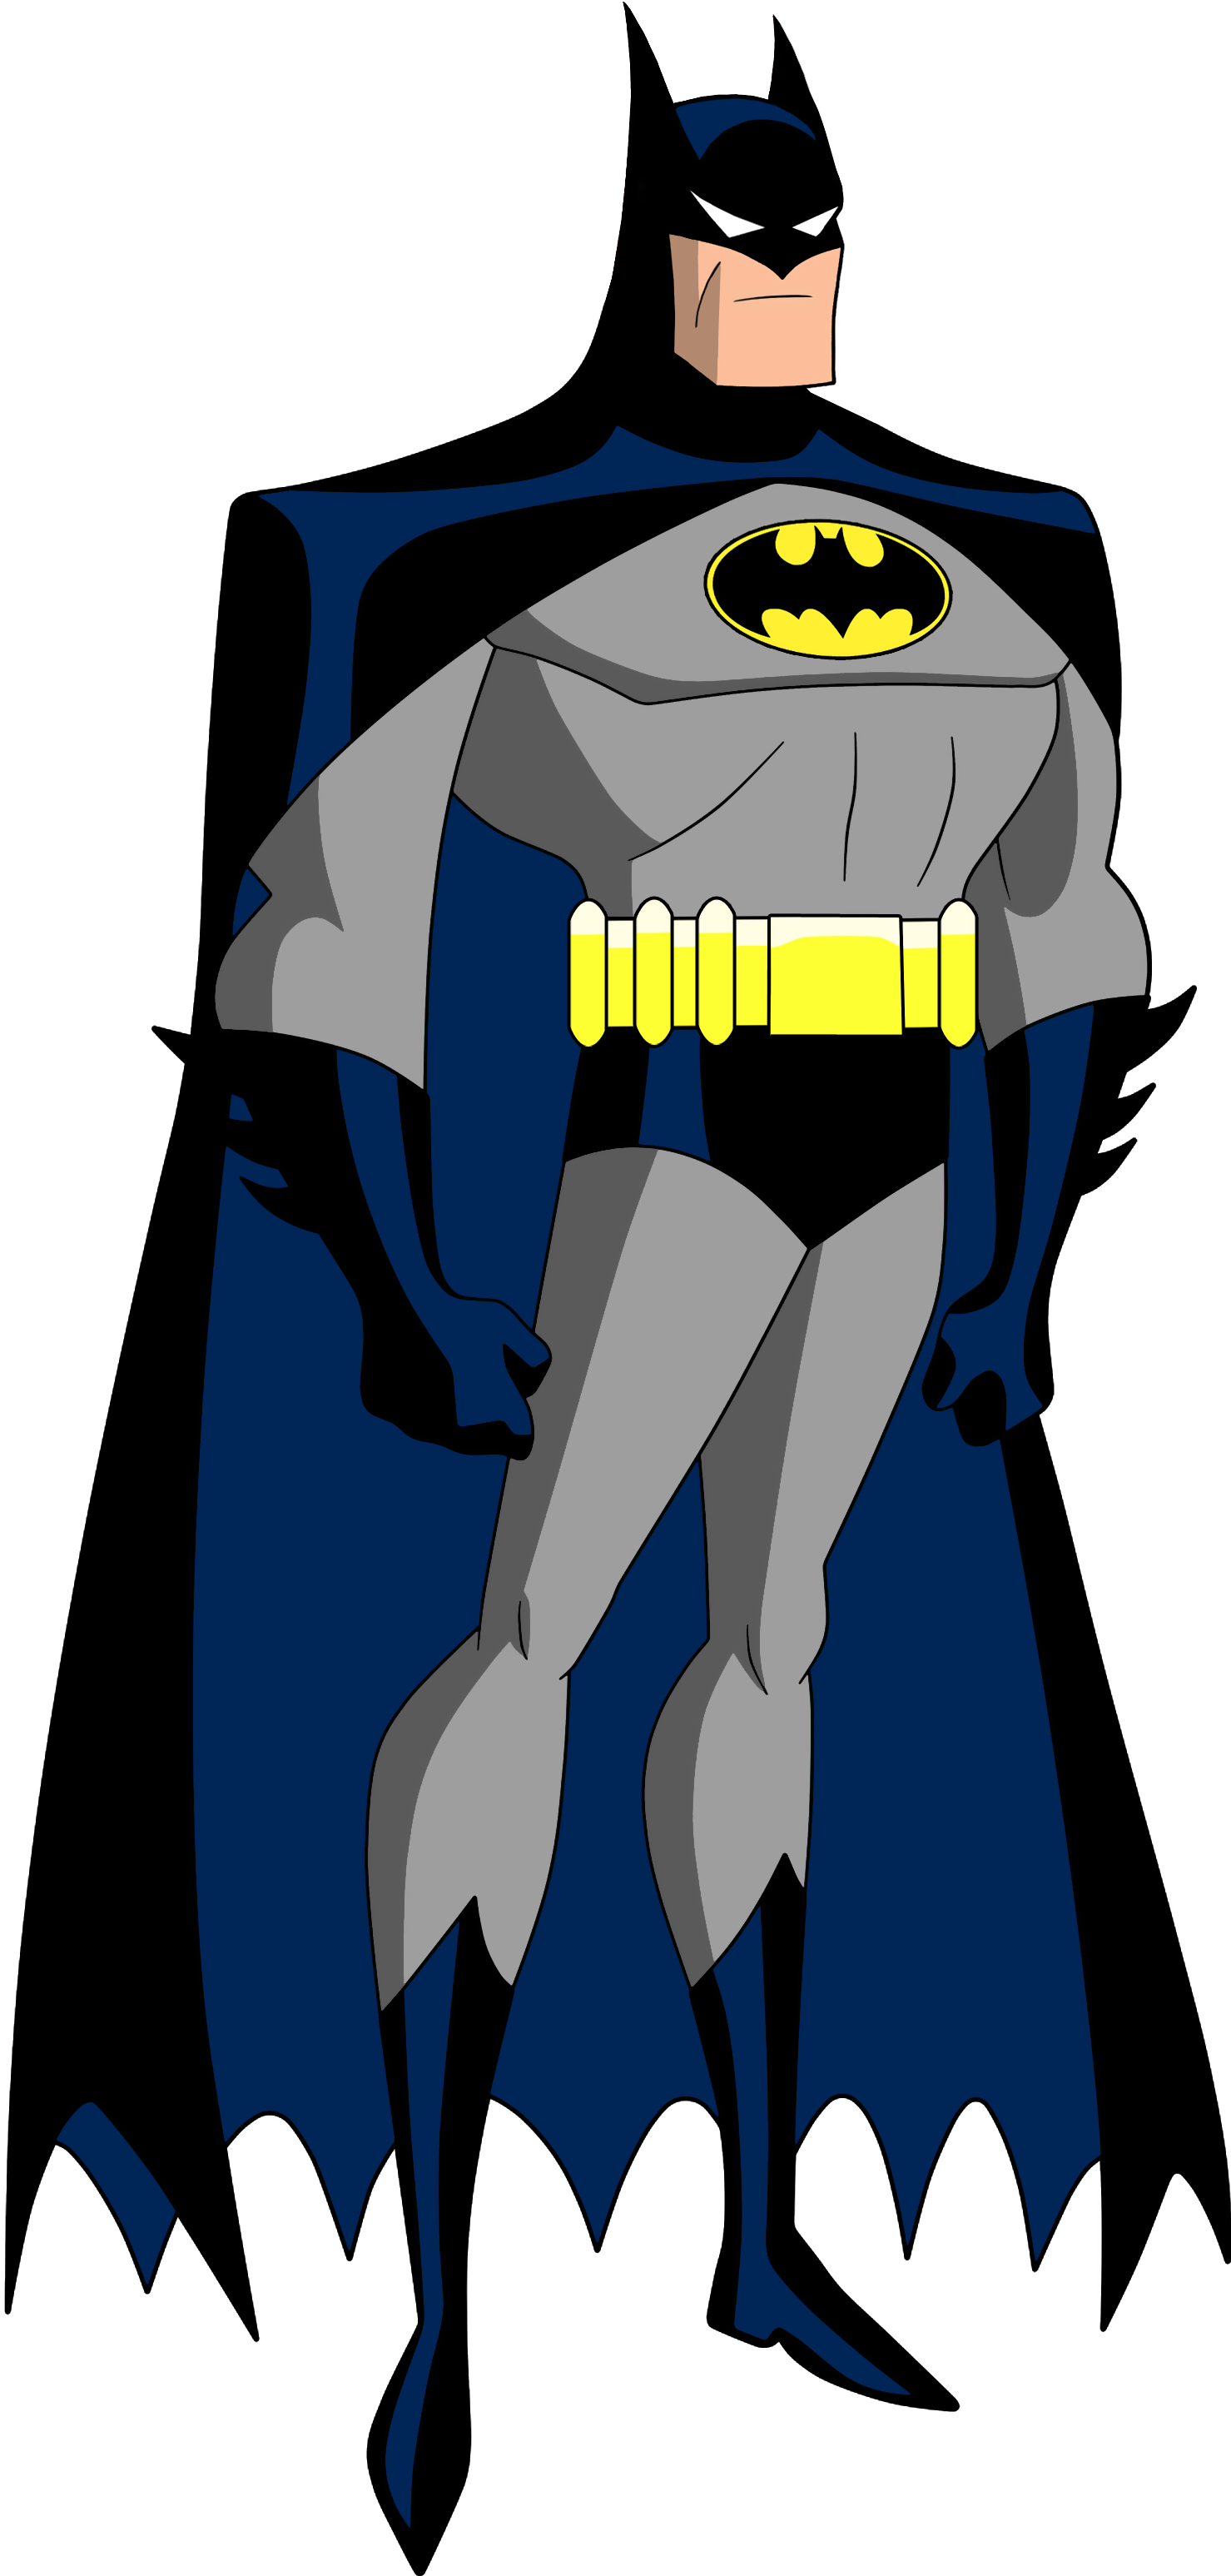 Batman Bruce Timm Style 2016 Custom By Noahlc - Batman League Justice Serie (2270x3216)